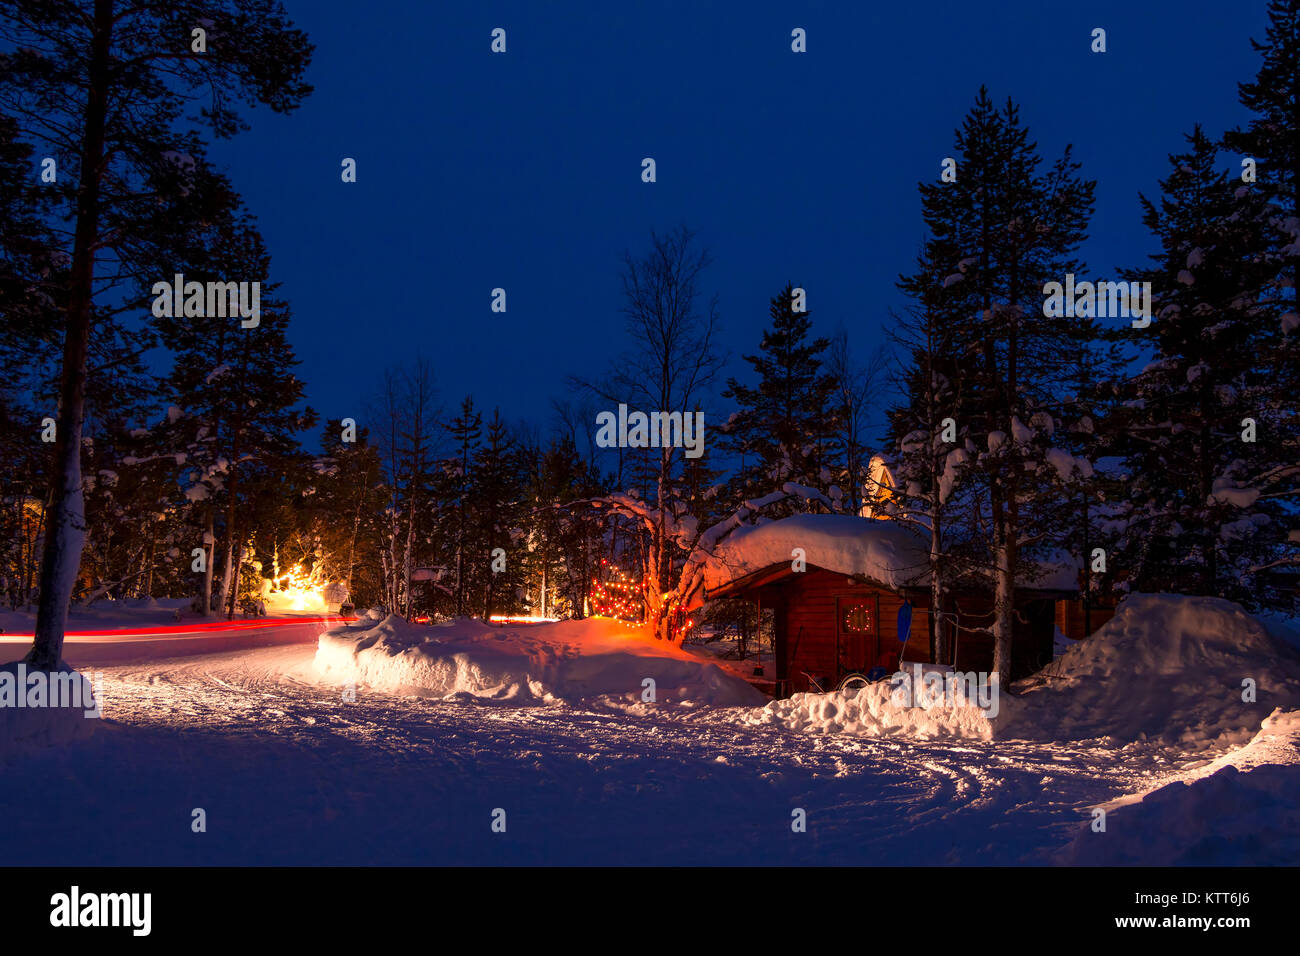 Noche de invierno. Alquiler camping en el bosque. Un montón de nieve. Guirnaldas navideñas y trazas de faros Foto de stock